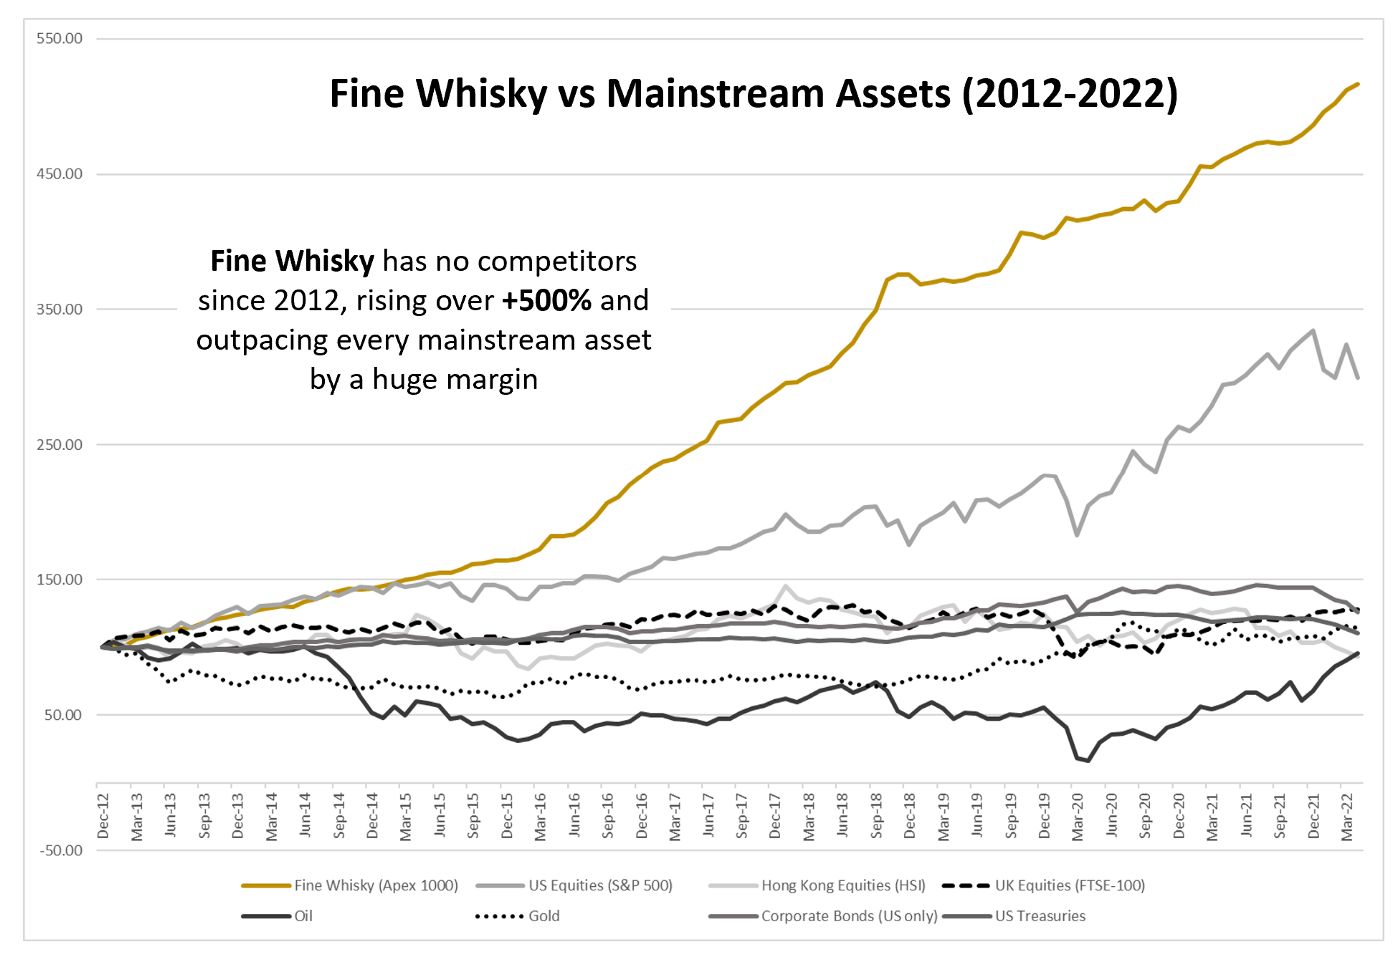 Fine Whisky vs Mainstream Assets 2012 - 2022